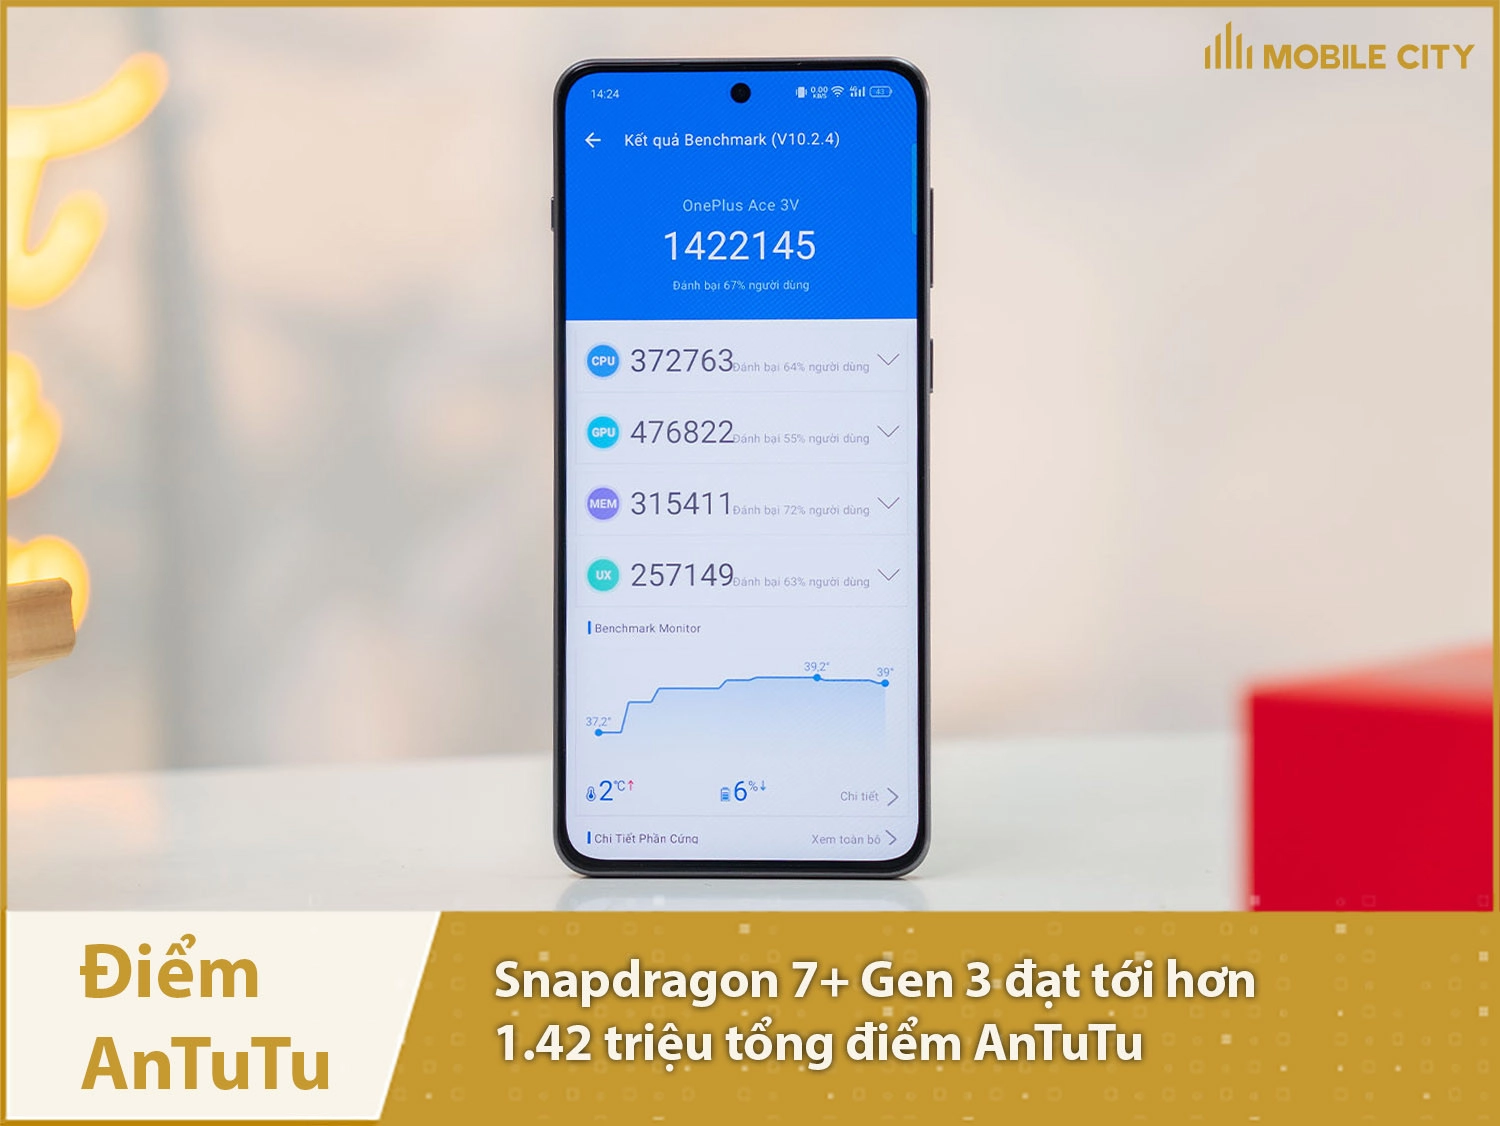 Snapdragon 7+ Gen 3 đạt hơn 1,42 triệu điểm AnTuTu